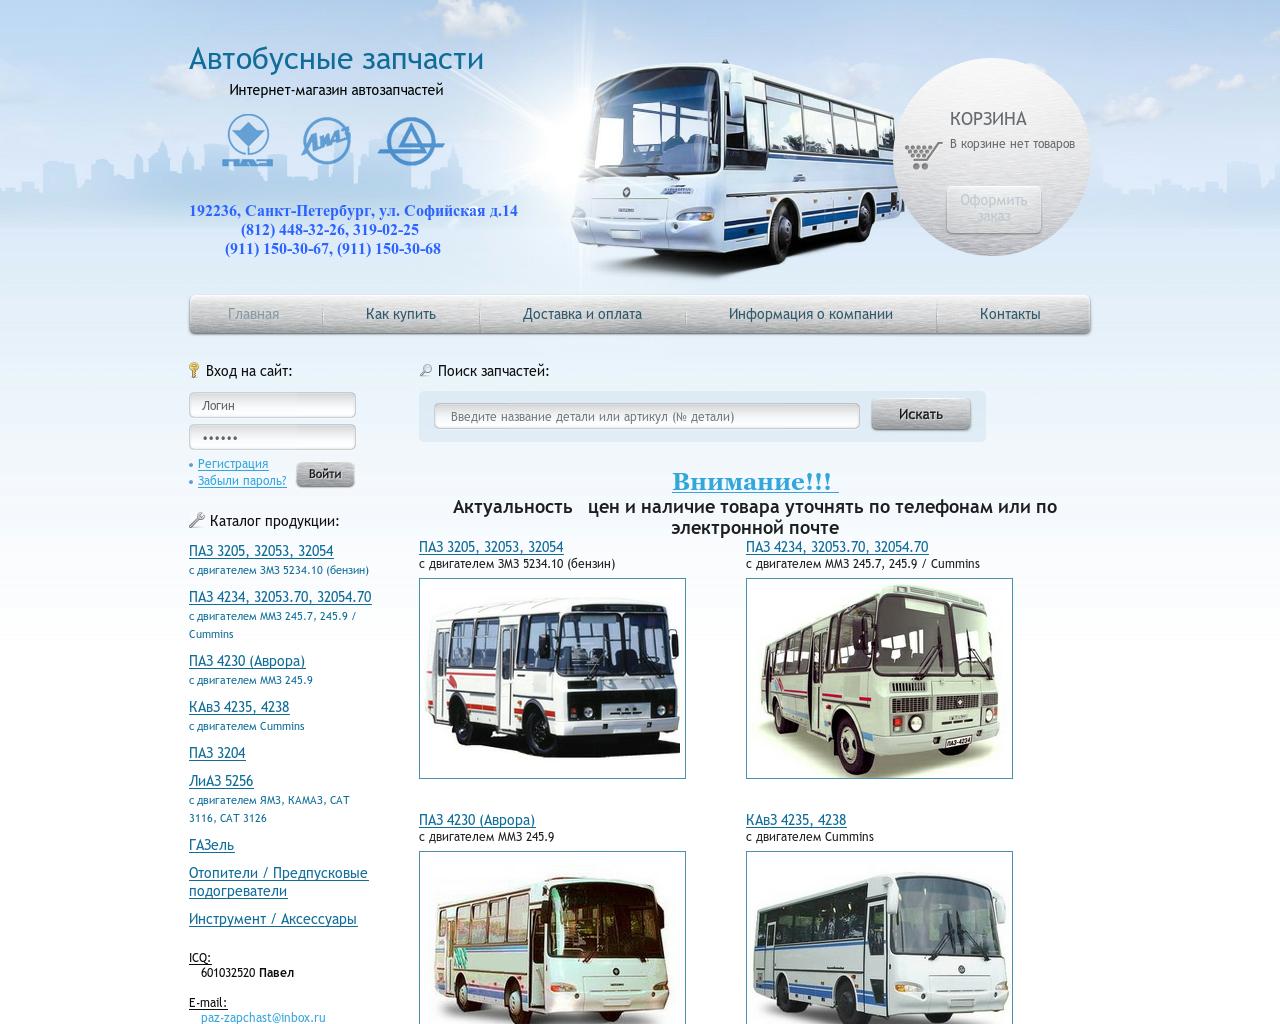 Автобус ру воронеж. Автобусные запчасти. Запчасти для автобусов. ПАЗ Санкт-Петербург. Импортер автобусных запчастей.